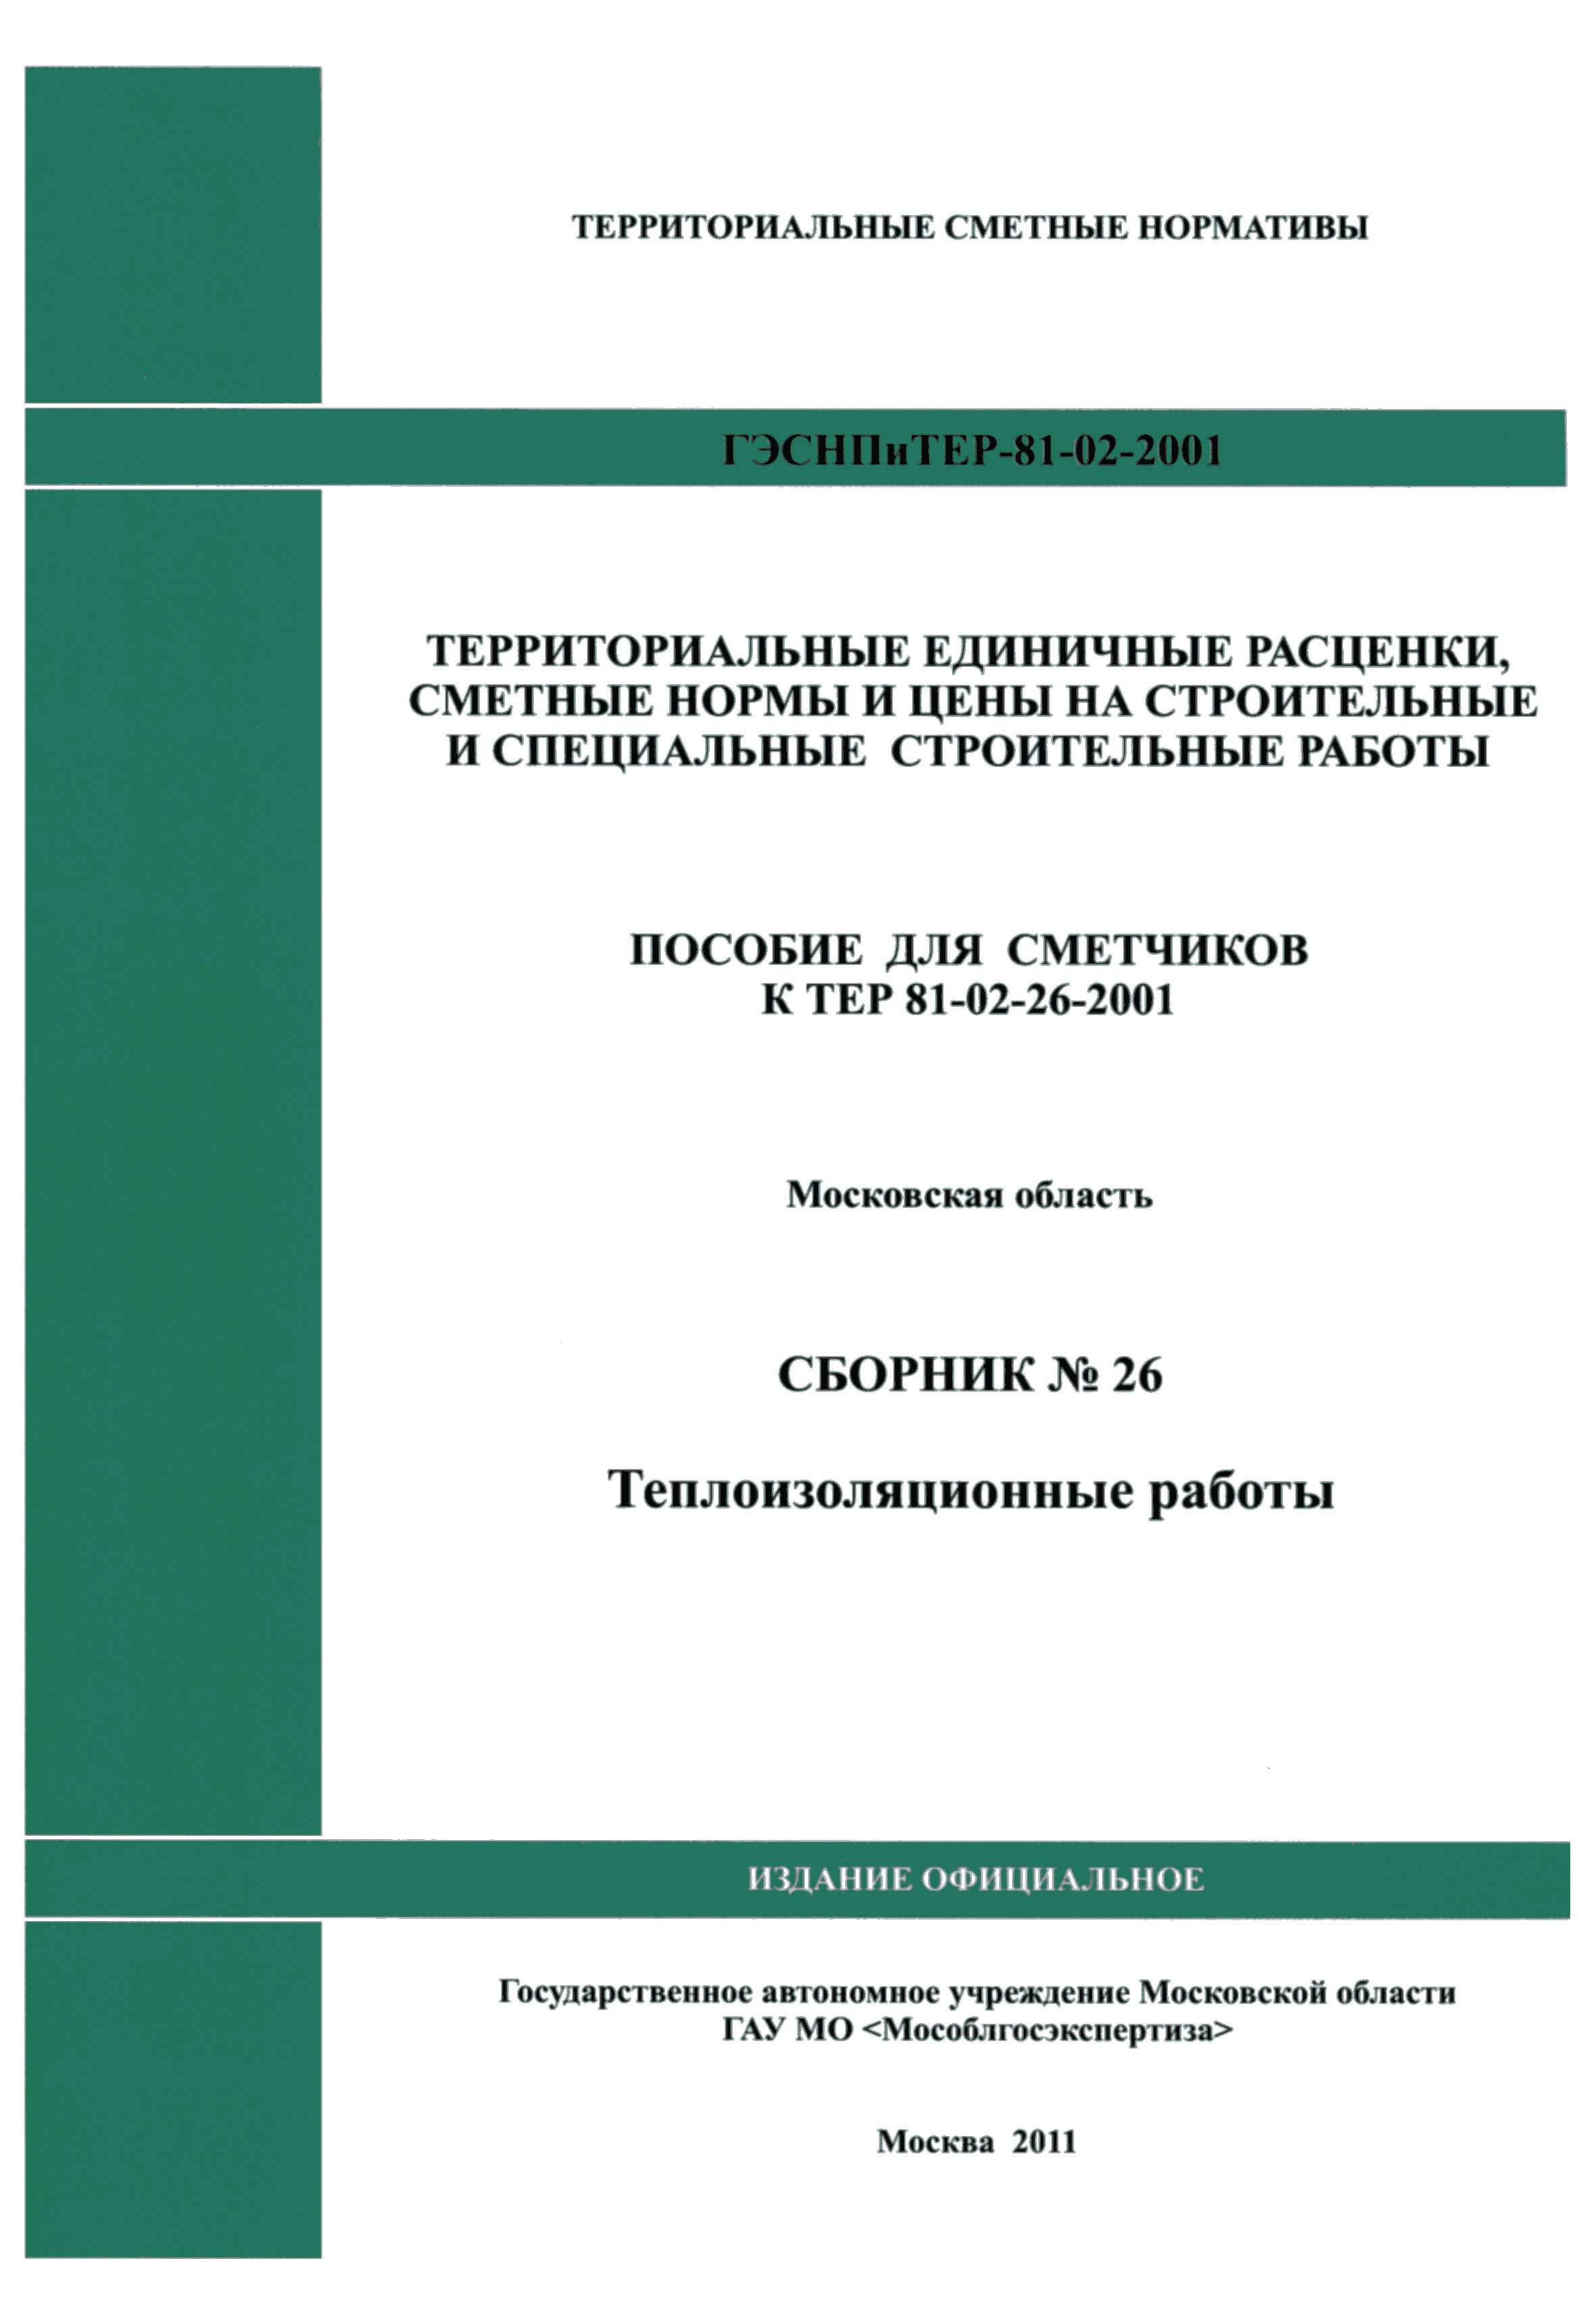 ГЭСНПиТЕР 2001-26 Московской области